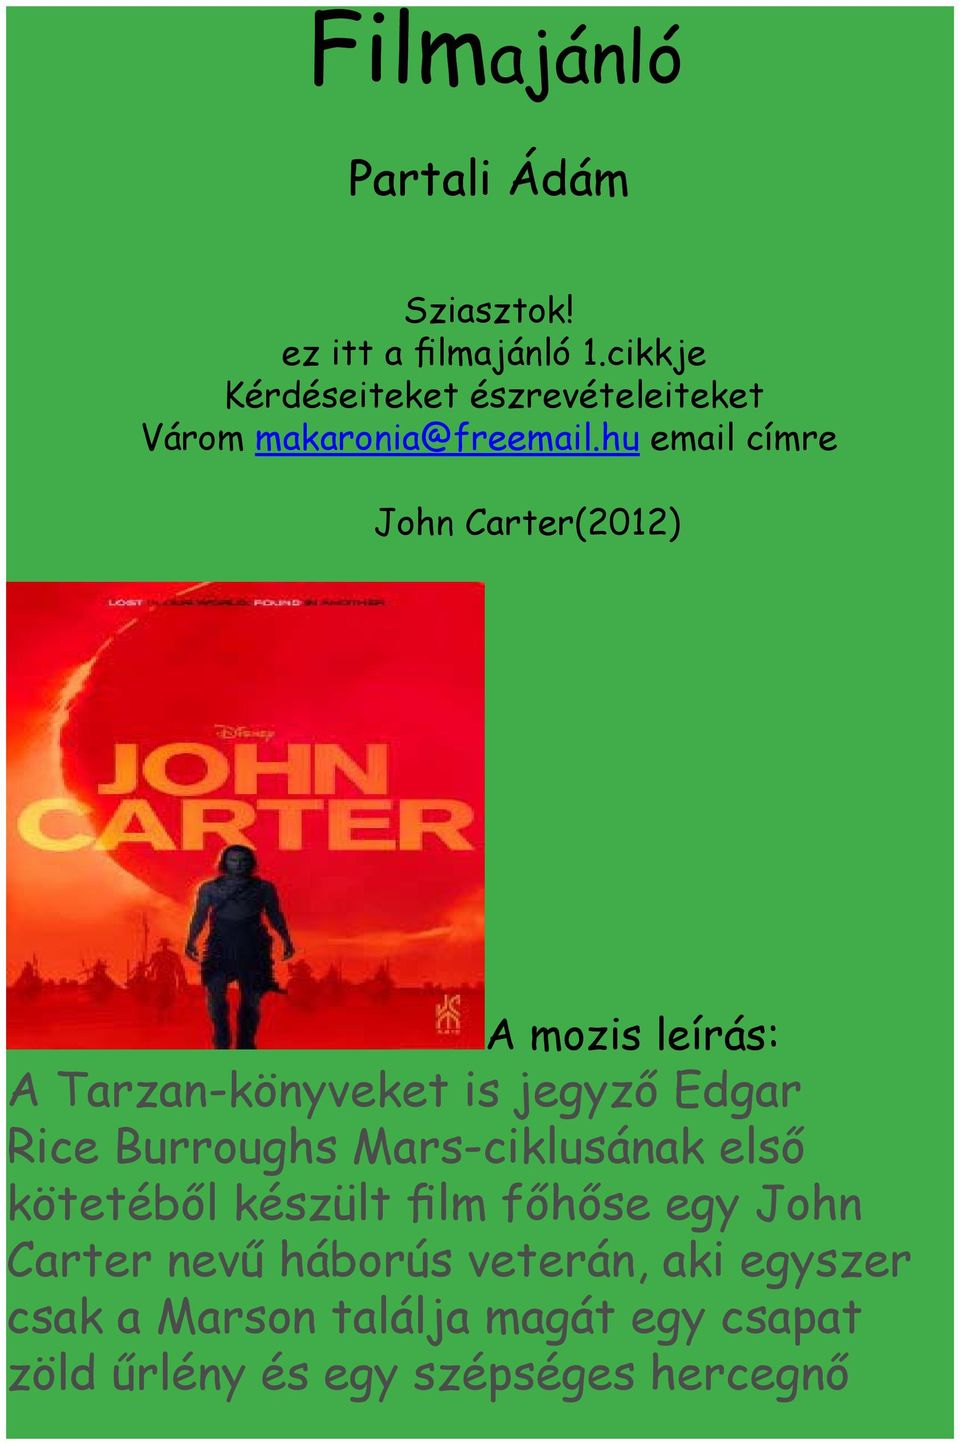 hu email címre John Carter(2012) A mozis leírás: A Tarzan-könyveket is jegyző Edgar Rice Burroughs